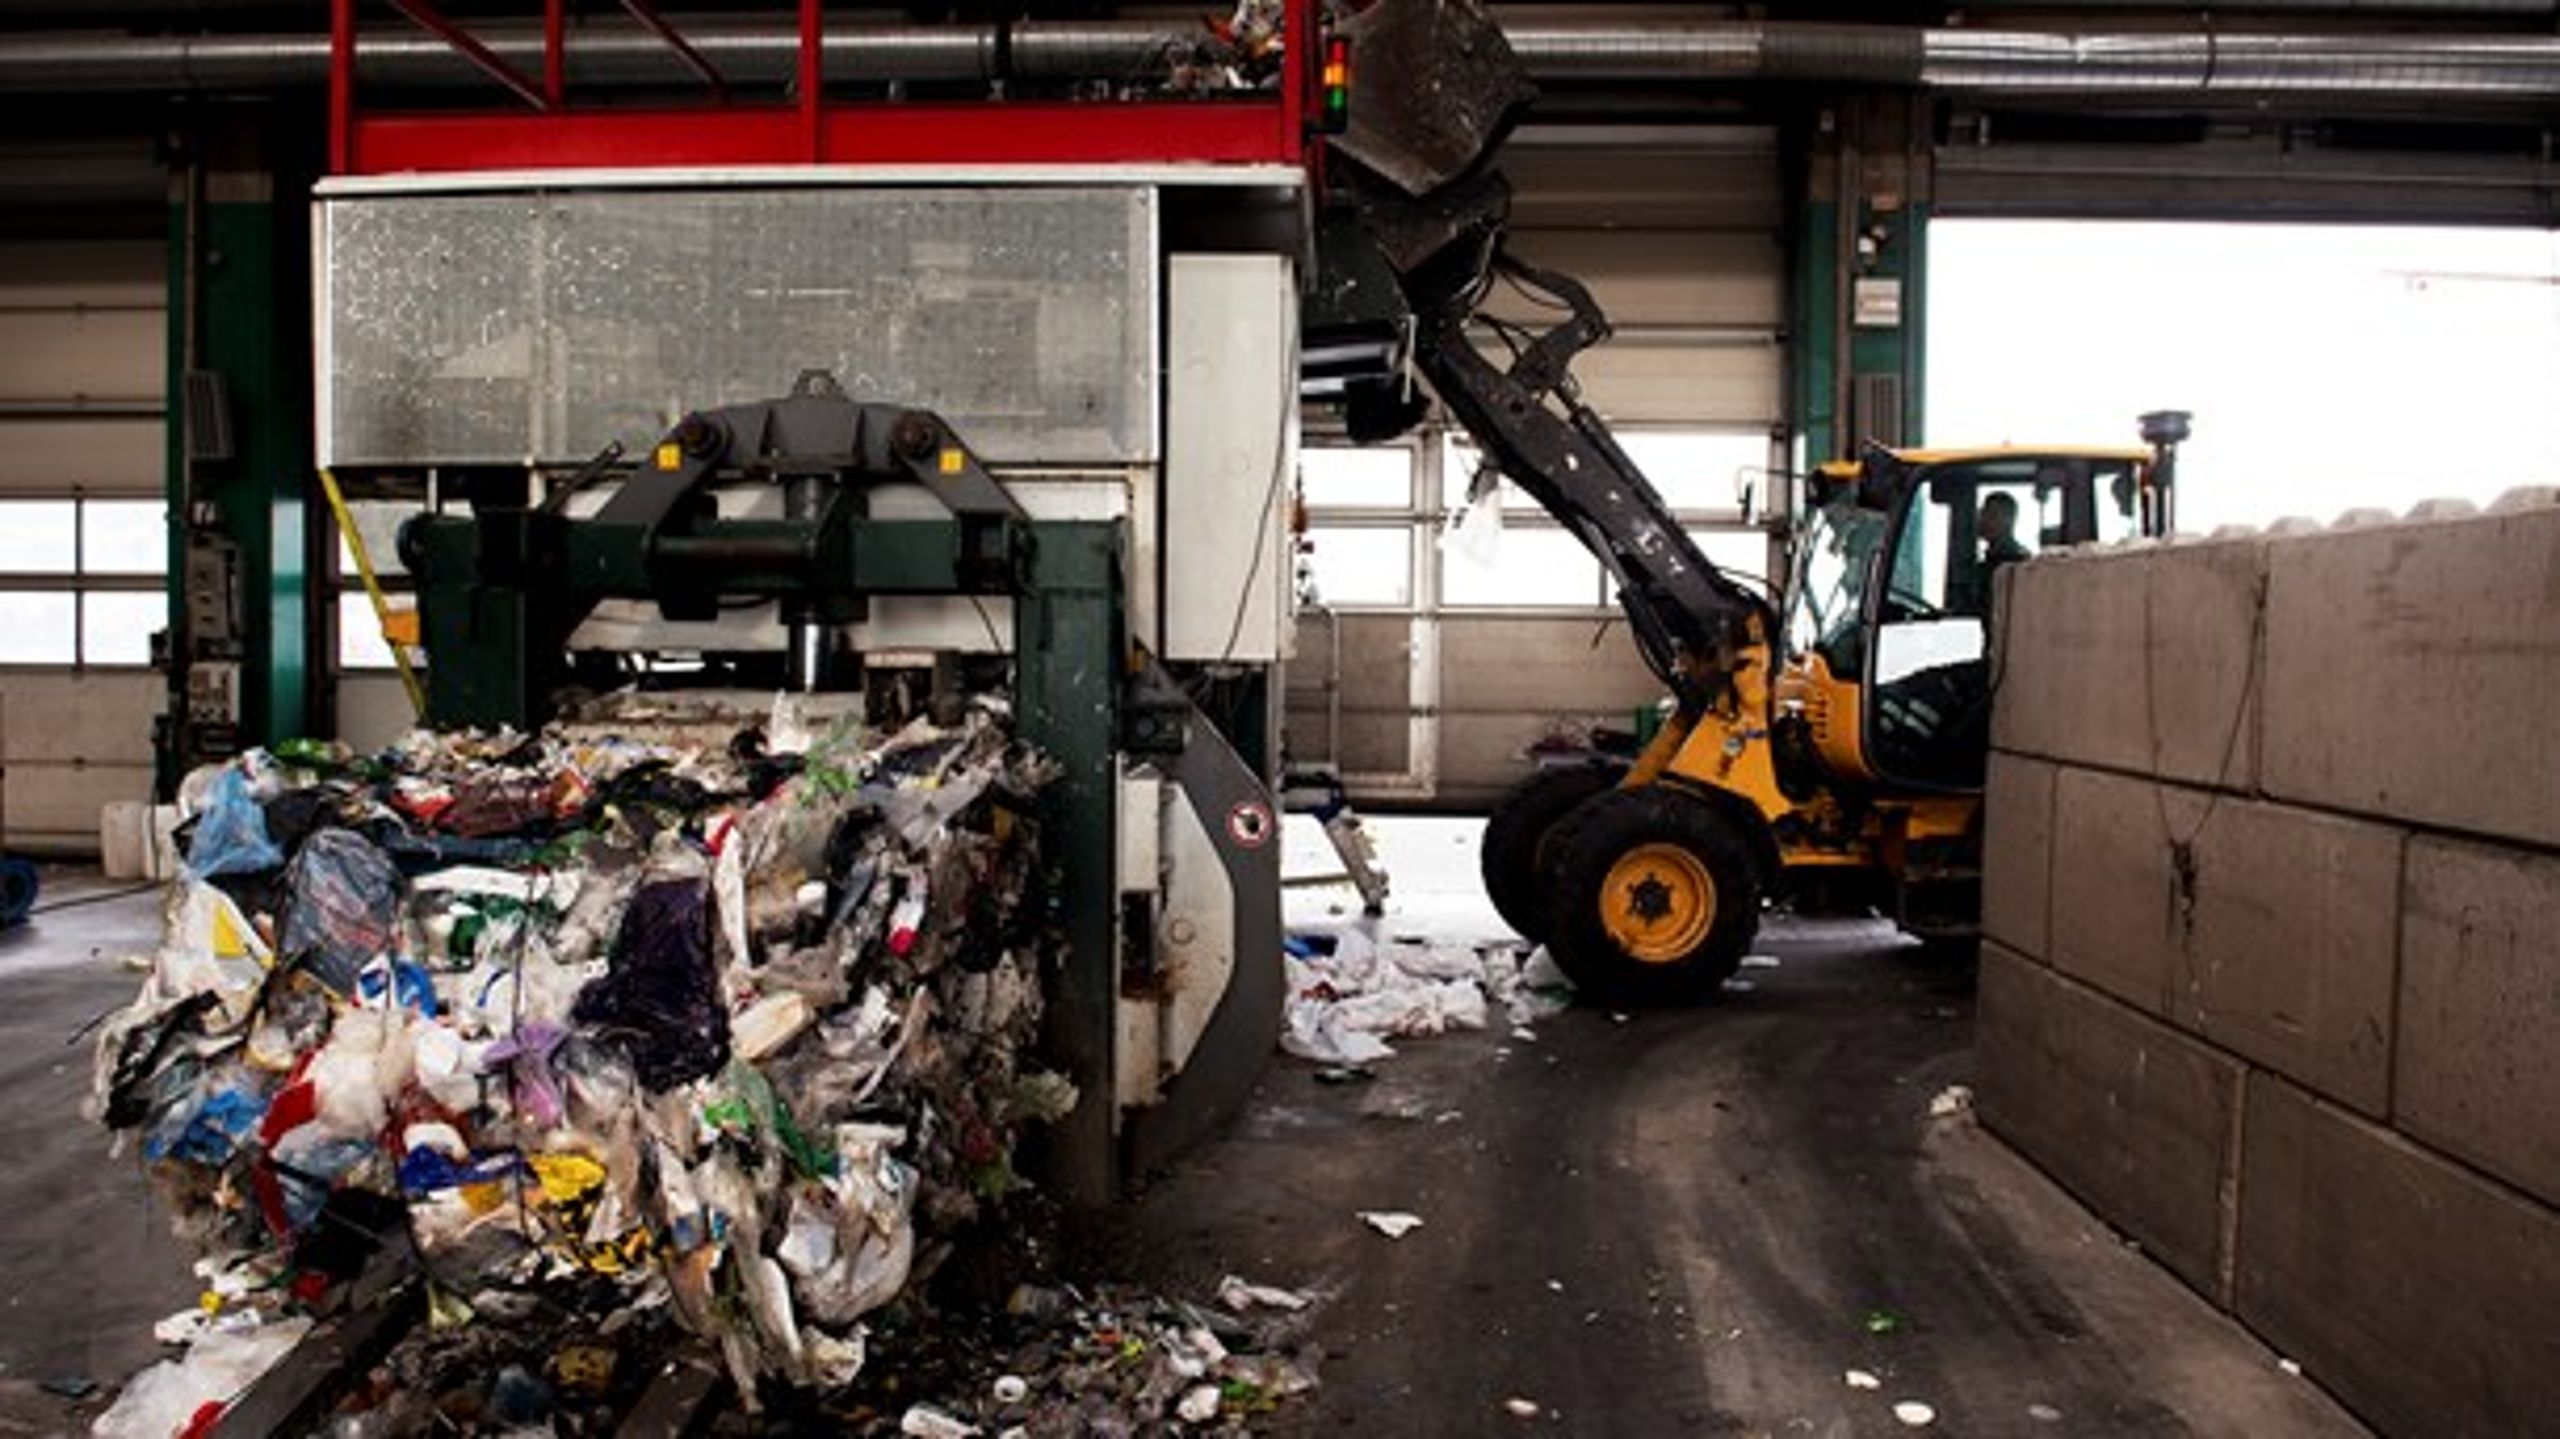 Så længe kommunerne har anvisningsret til affald, er det samlede resultat, at der forbrændes for meget og genanvendes for lidt, skriver Erik Østergaard, direktør for DTL.